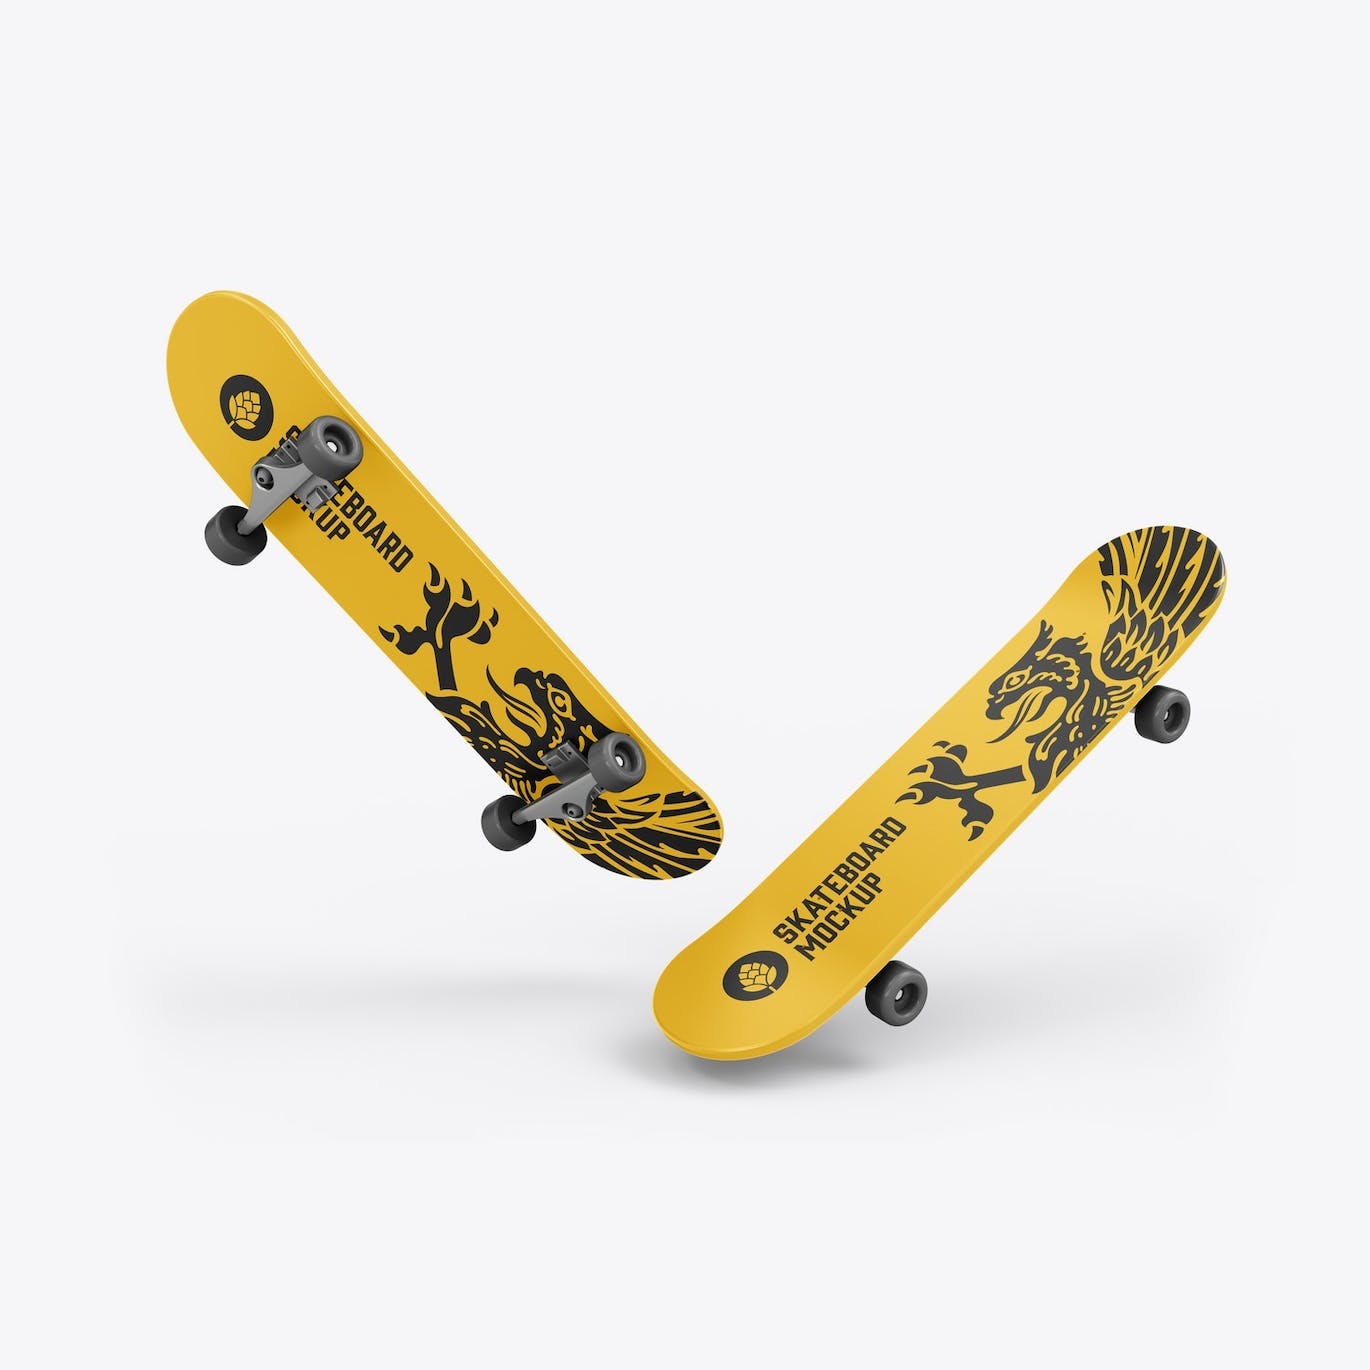 骑行滑板品牌设计样机 Skateboard Mockup 样机素材 第15张